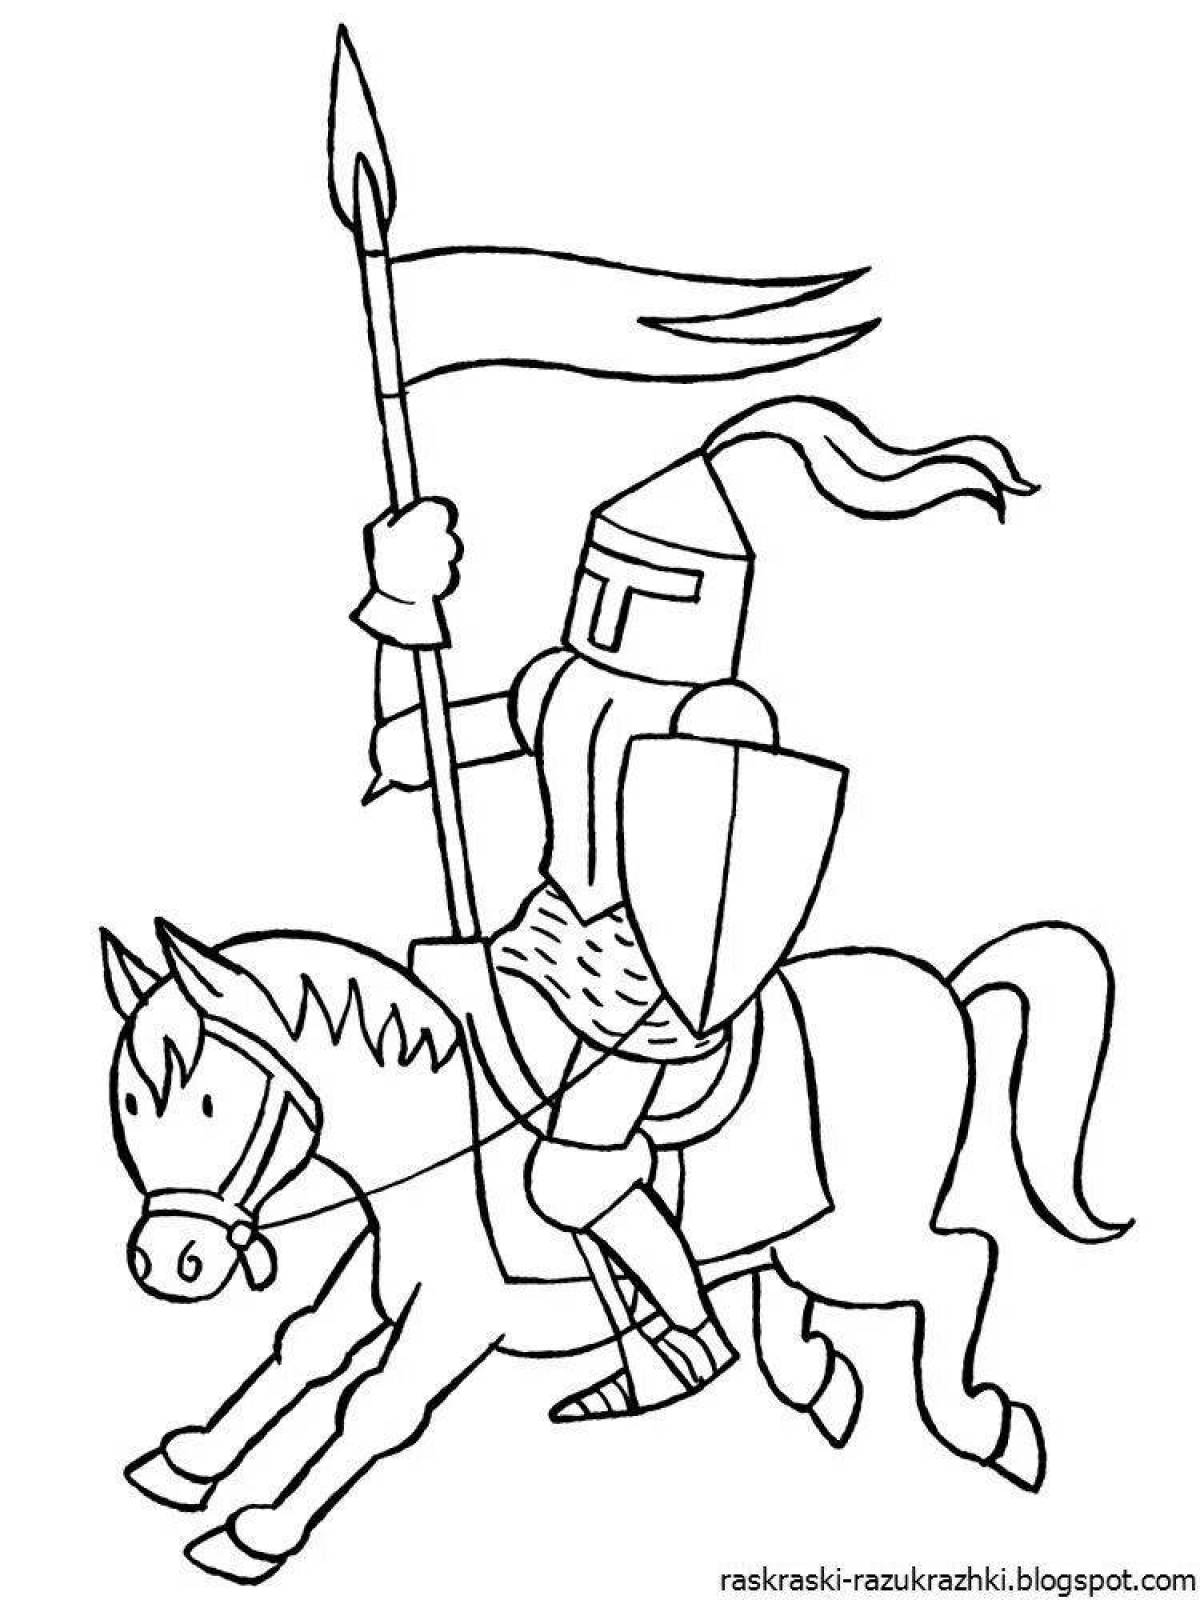 Прославленная раскраска рыцарь на коне